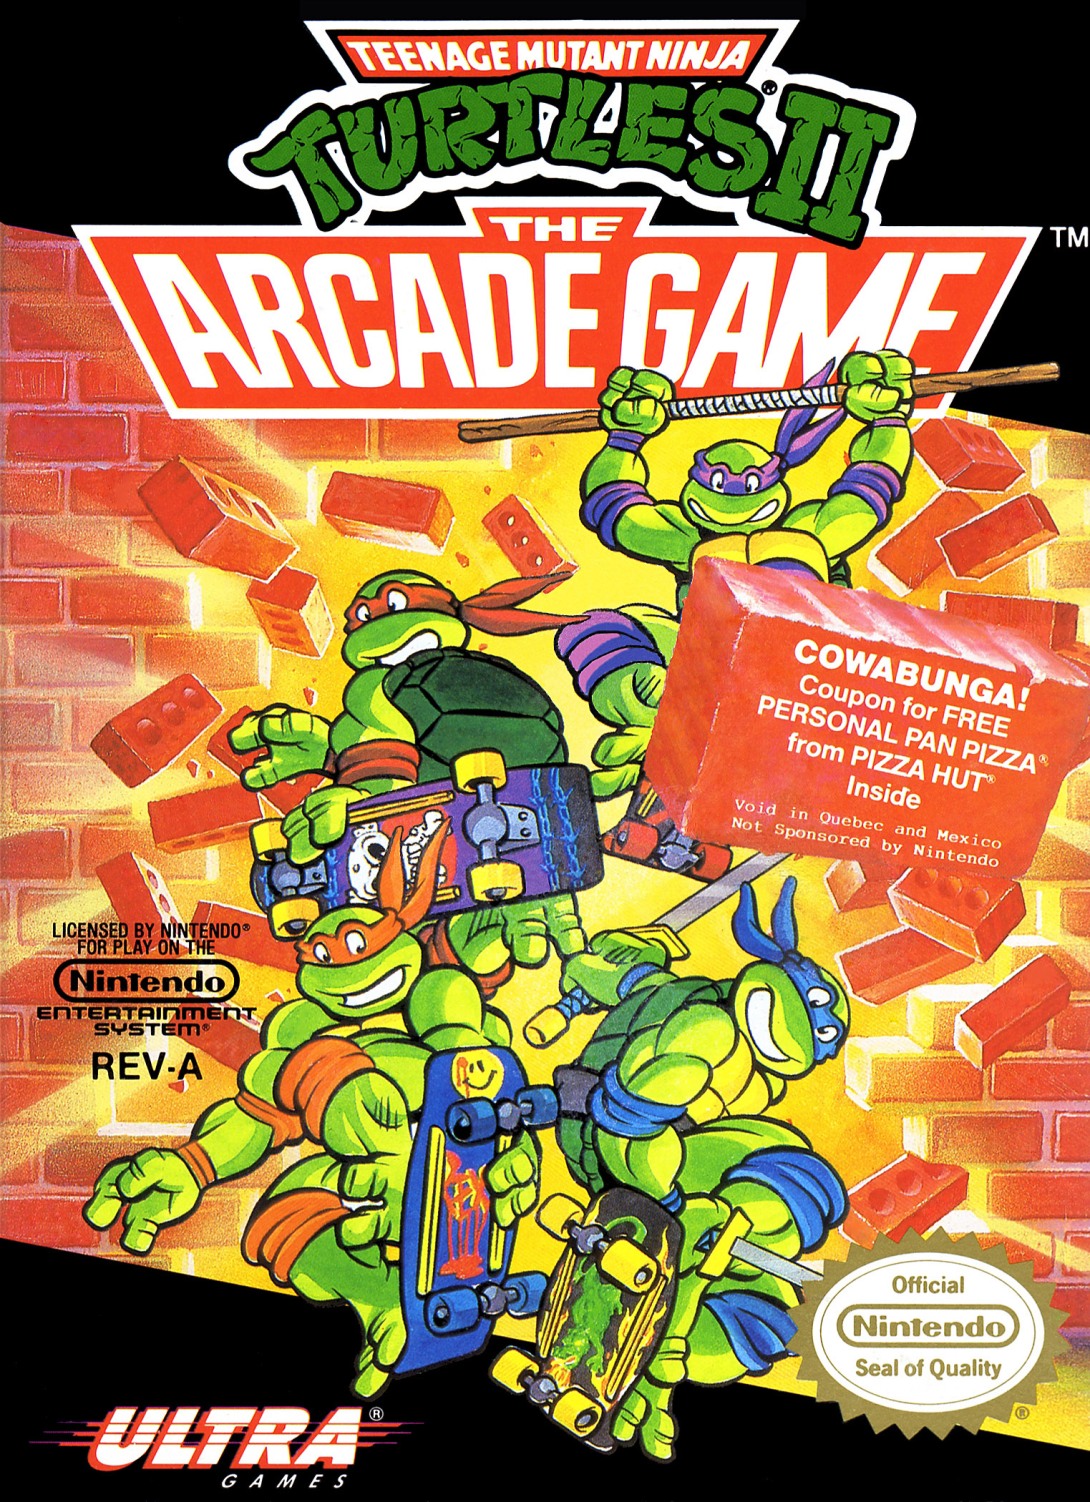 Turtles nes. Teenage Mutant Ninja Turtles 2 NES. Turtles teenage 2 NES обложки. TMNT 2 NES обложка. Teenage Mutant Ninja Turtles NES обложка.